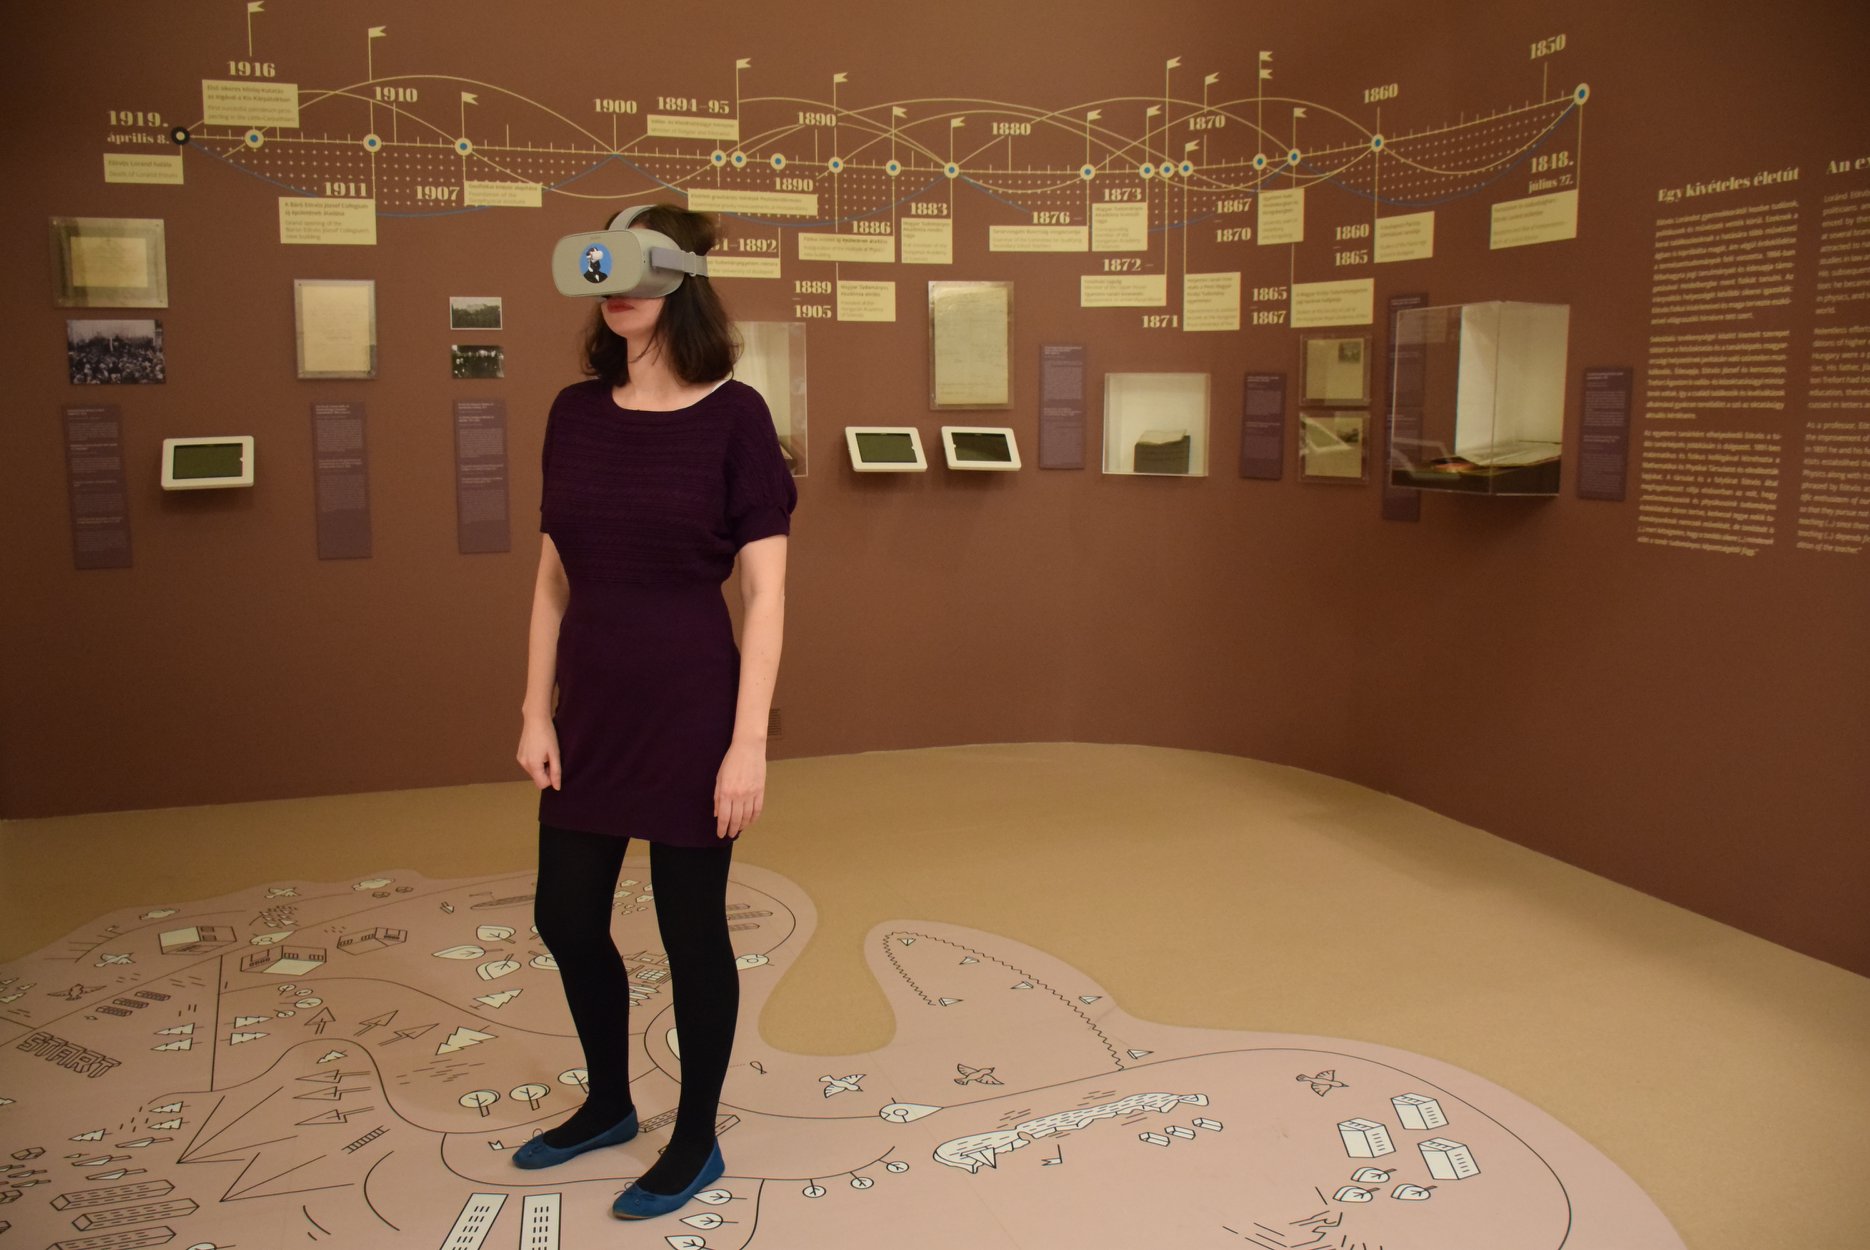 Eötvös Lóránd kiállitás, Virtuális valóság (VR) szemüveg, egy személy